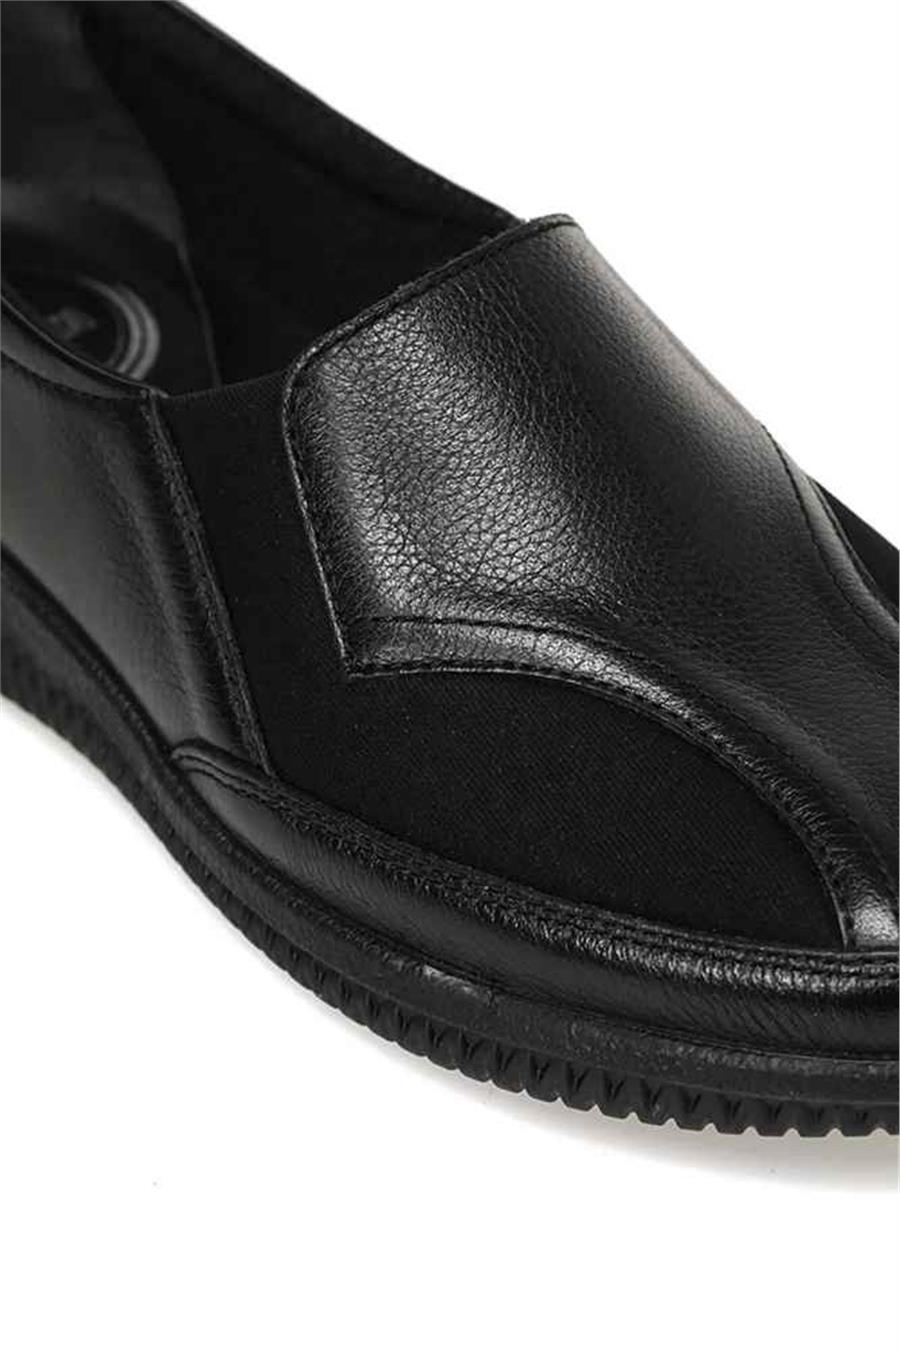 Polaris 5 Nokta 104504 Z3Pr Siyah Kadın Geleneksel Comfort Düz Ayakkabı